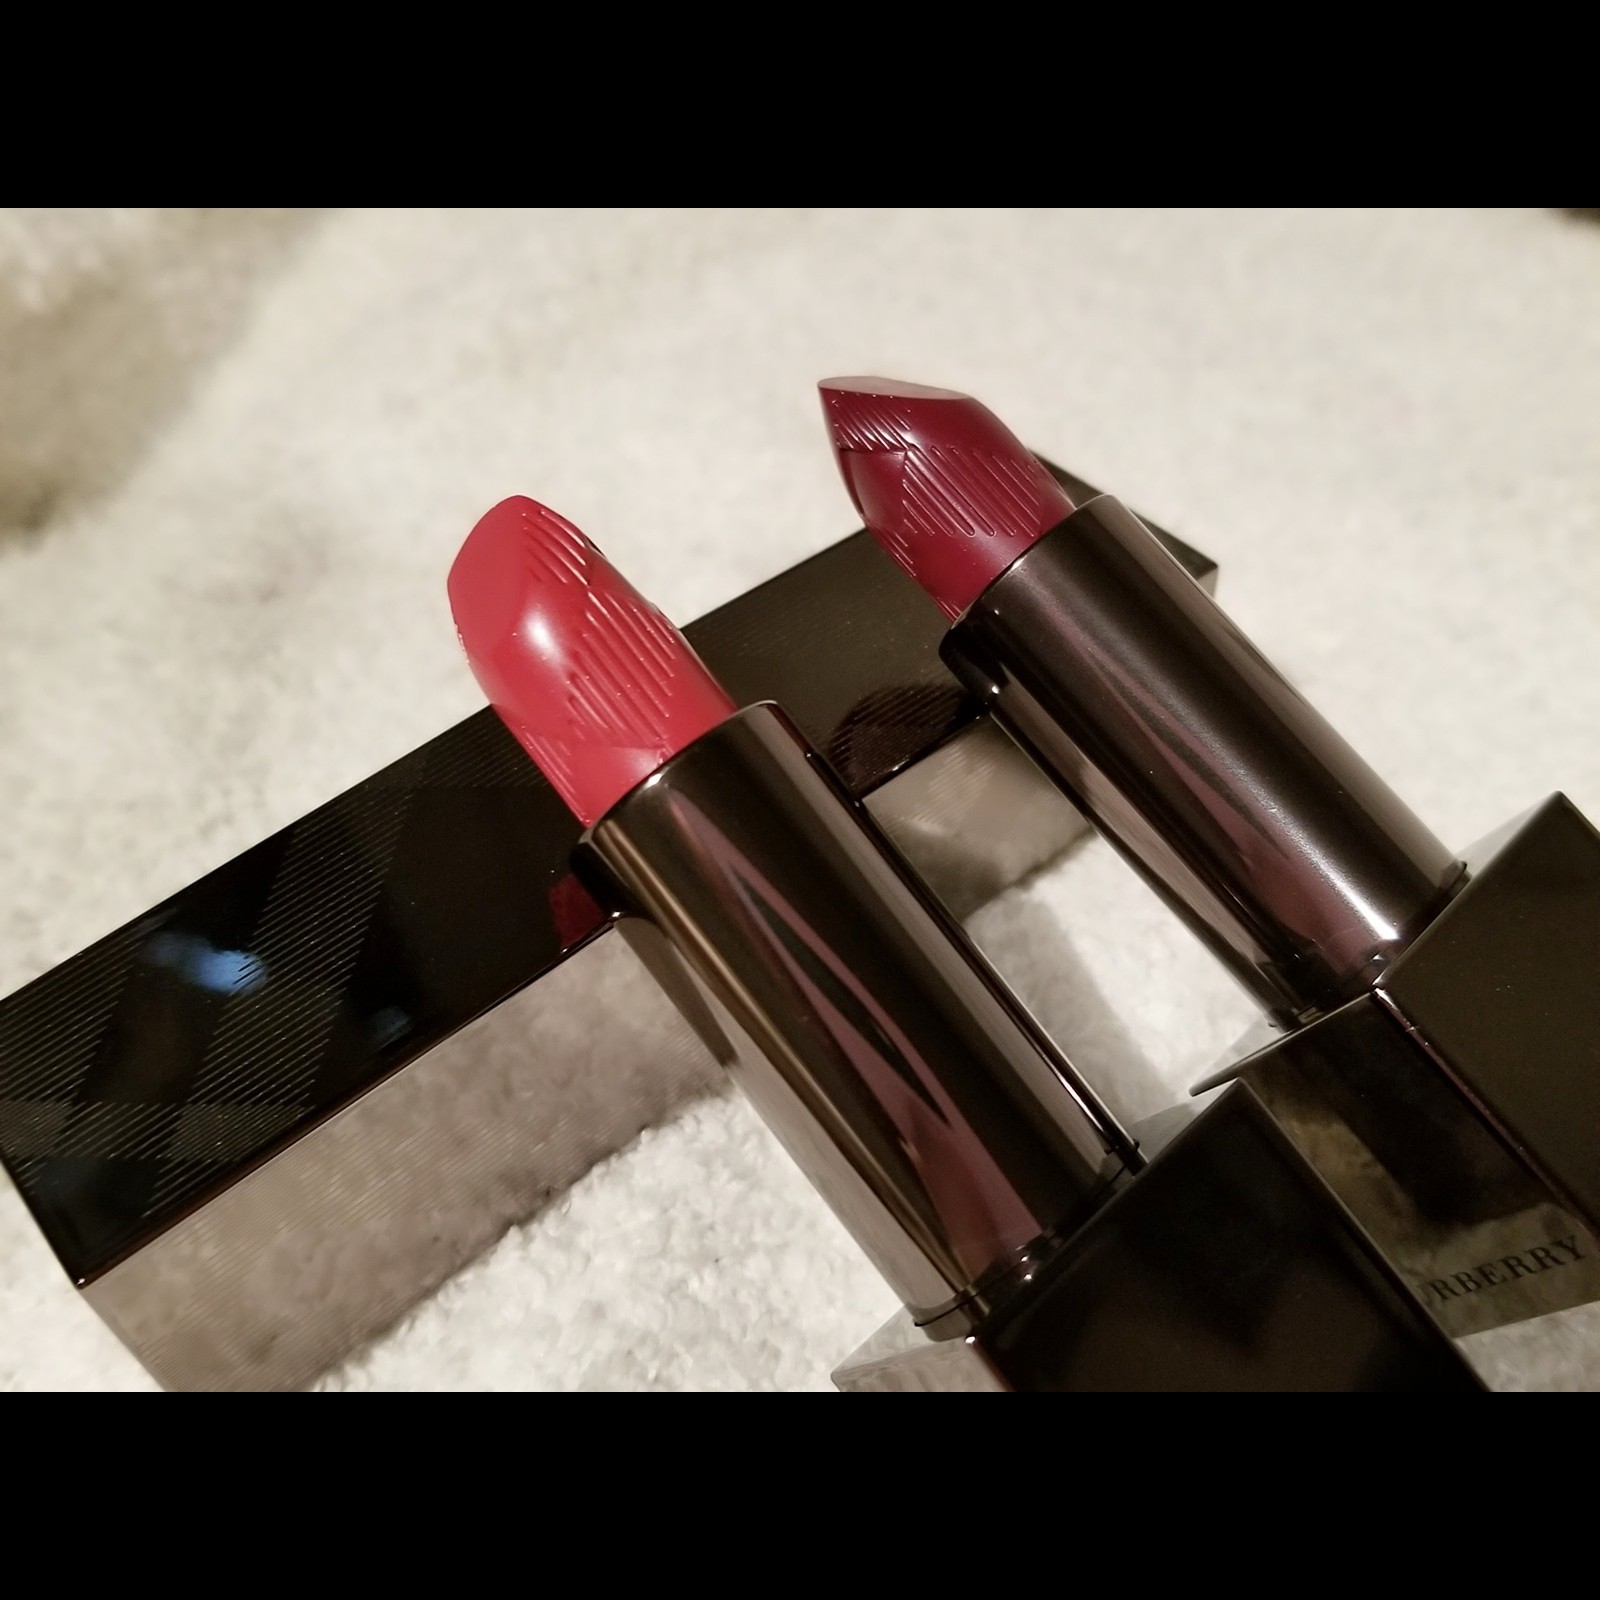 バーバリー バーバリーキス 93ラセットの商品画像 1枚目 美容 化粧品情報はアットコスメ